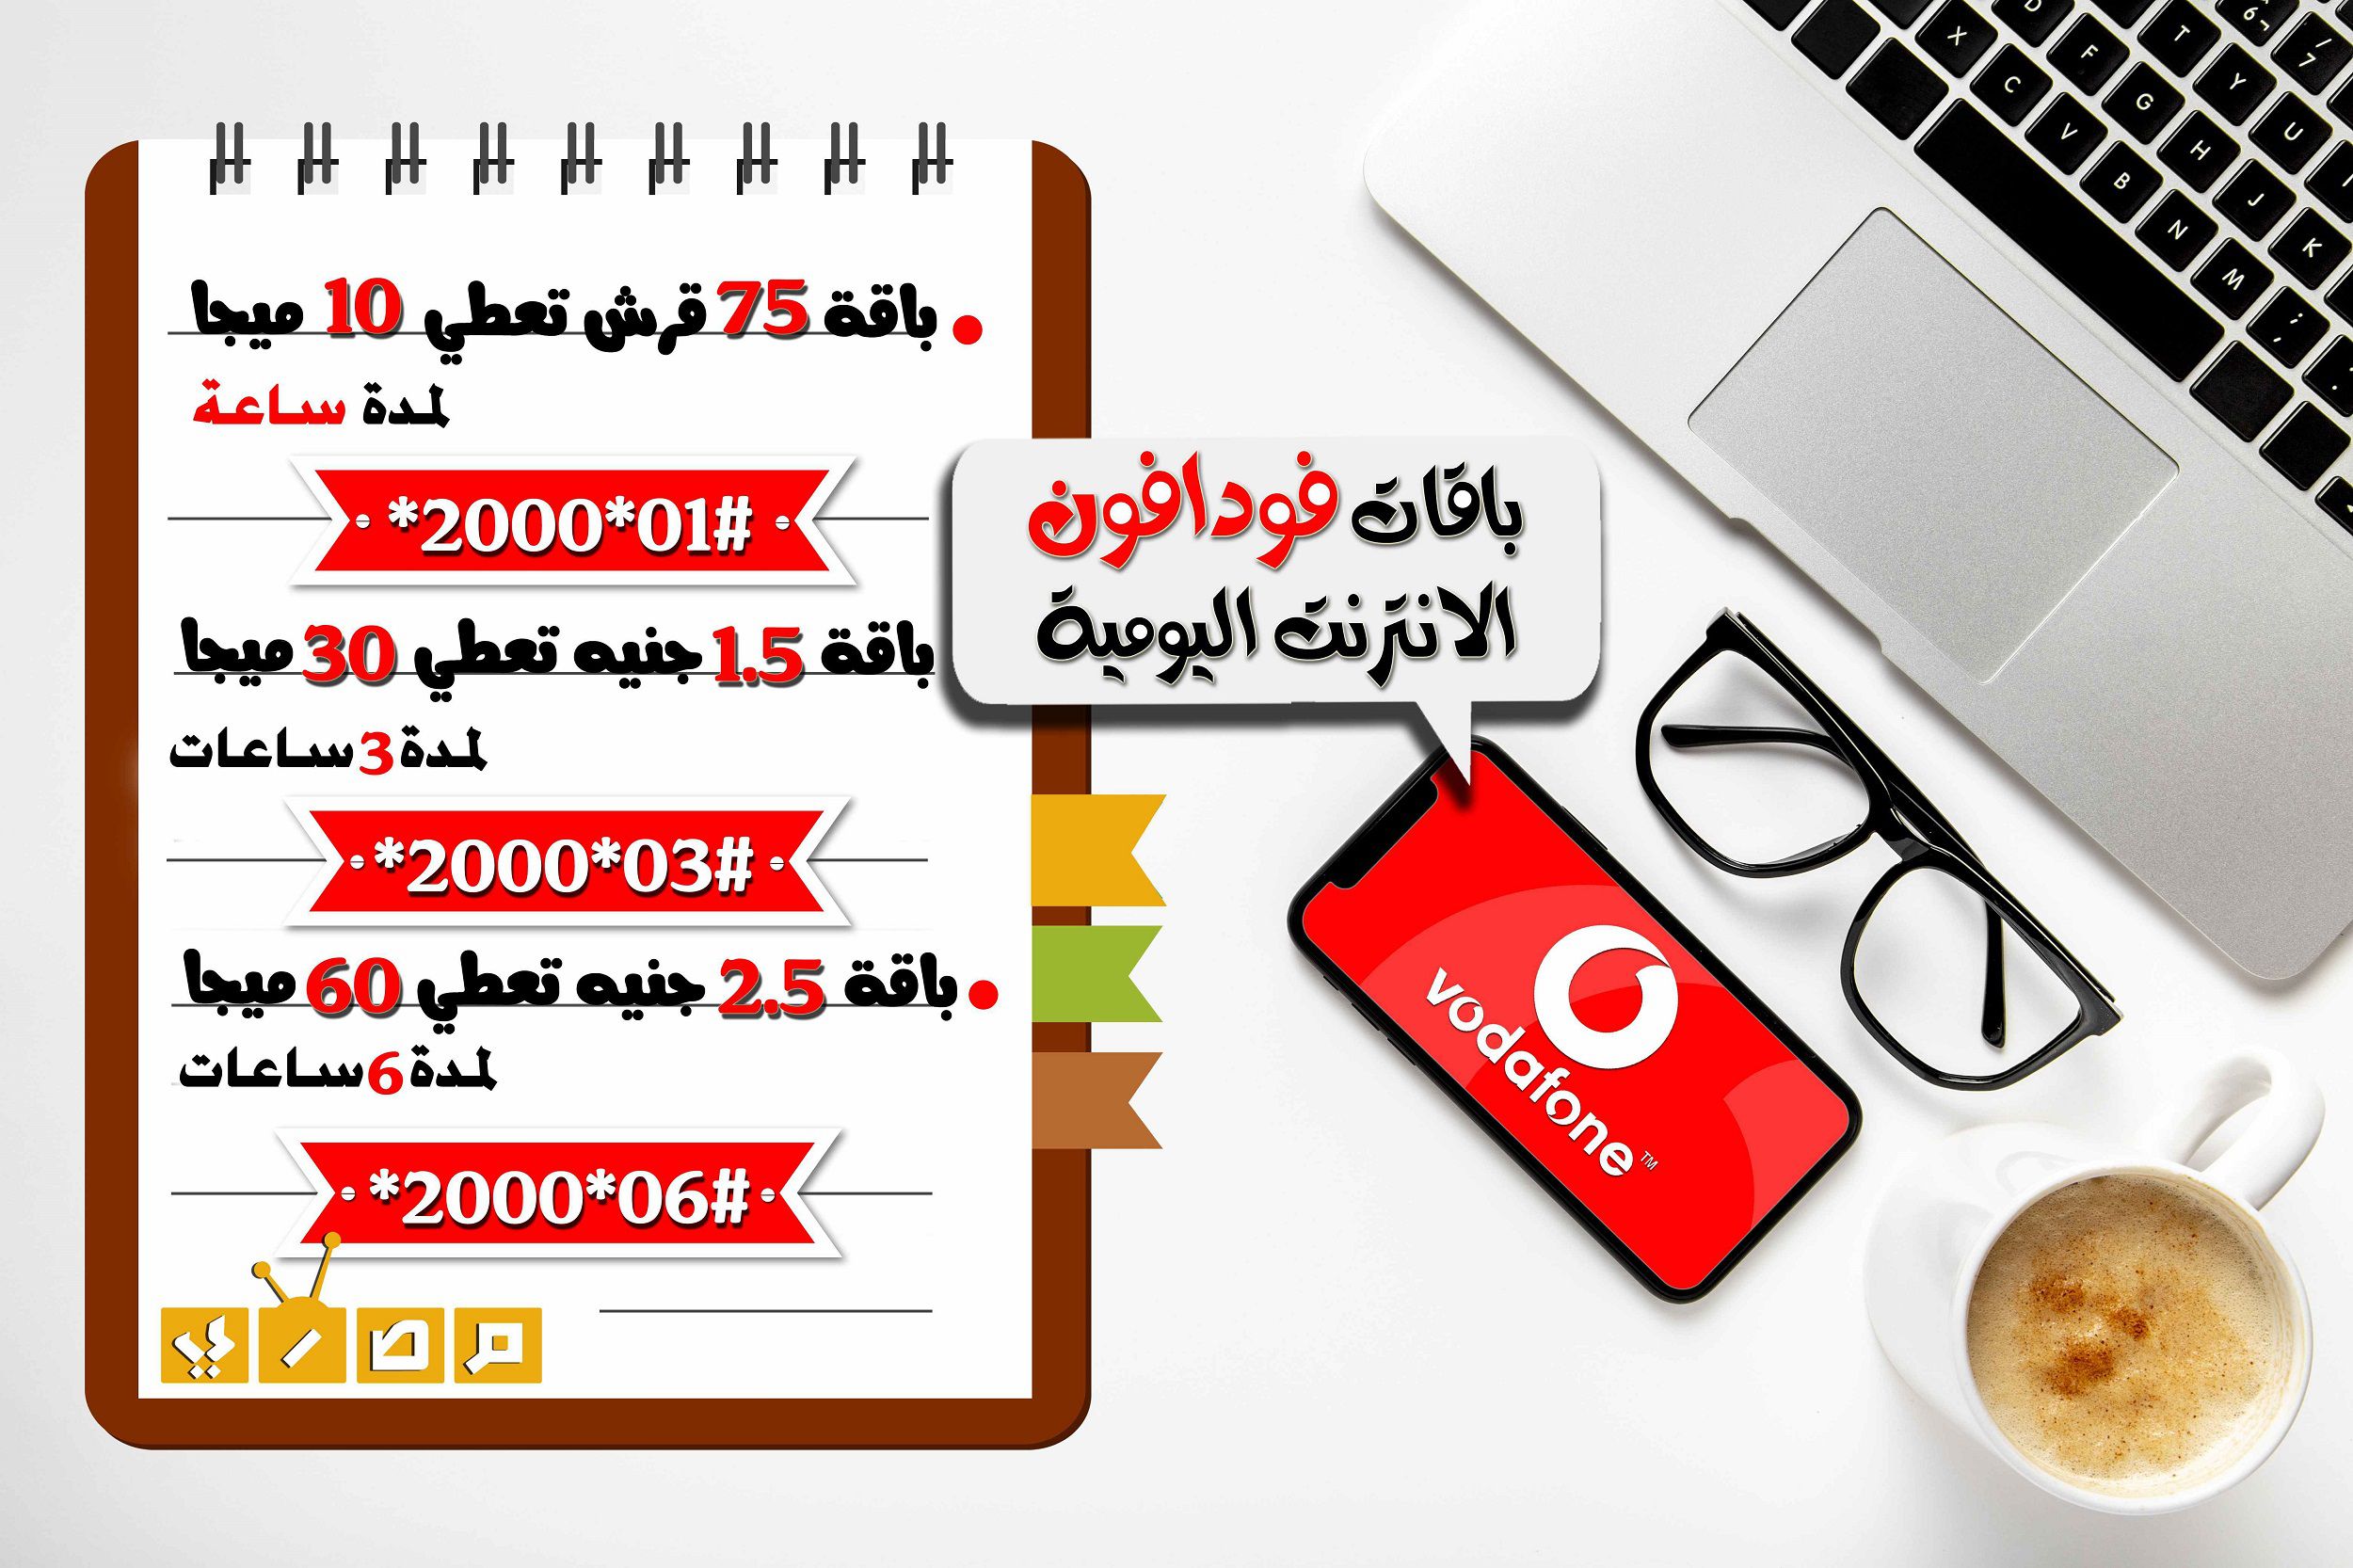  فودافون الانترنت اليومية - موقع مصري